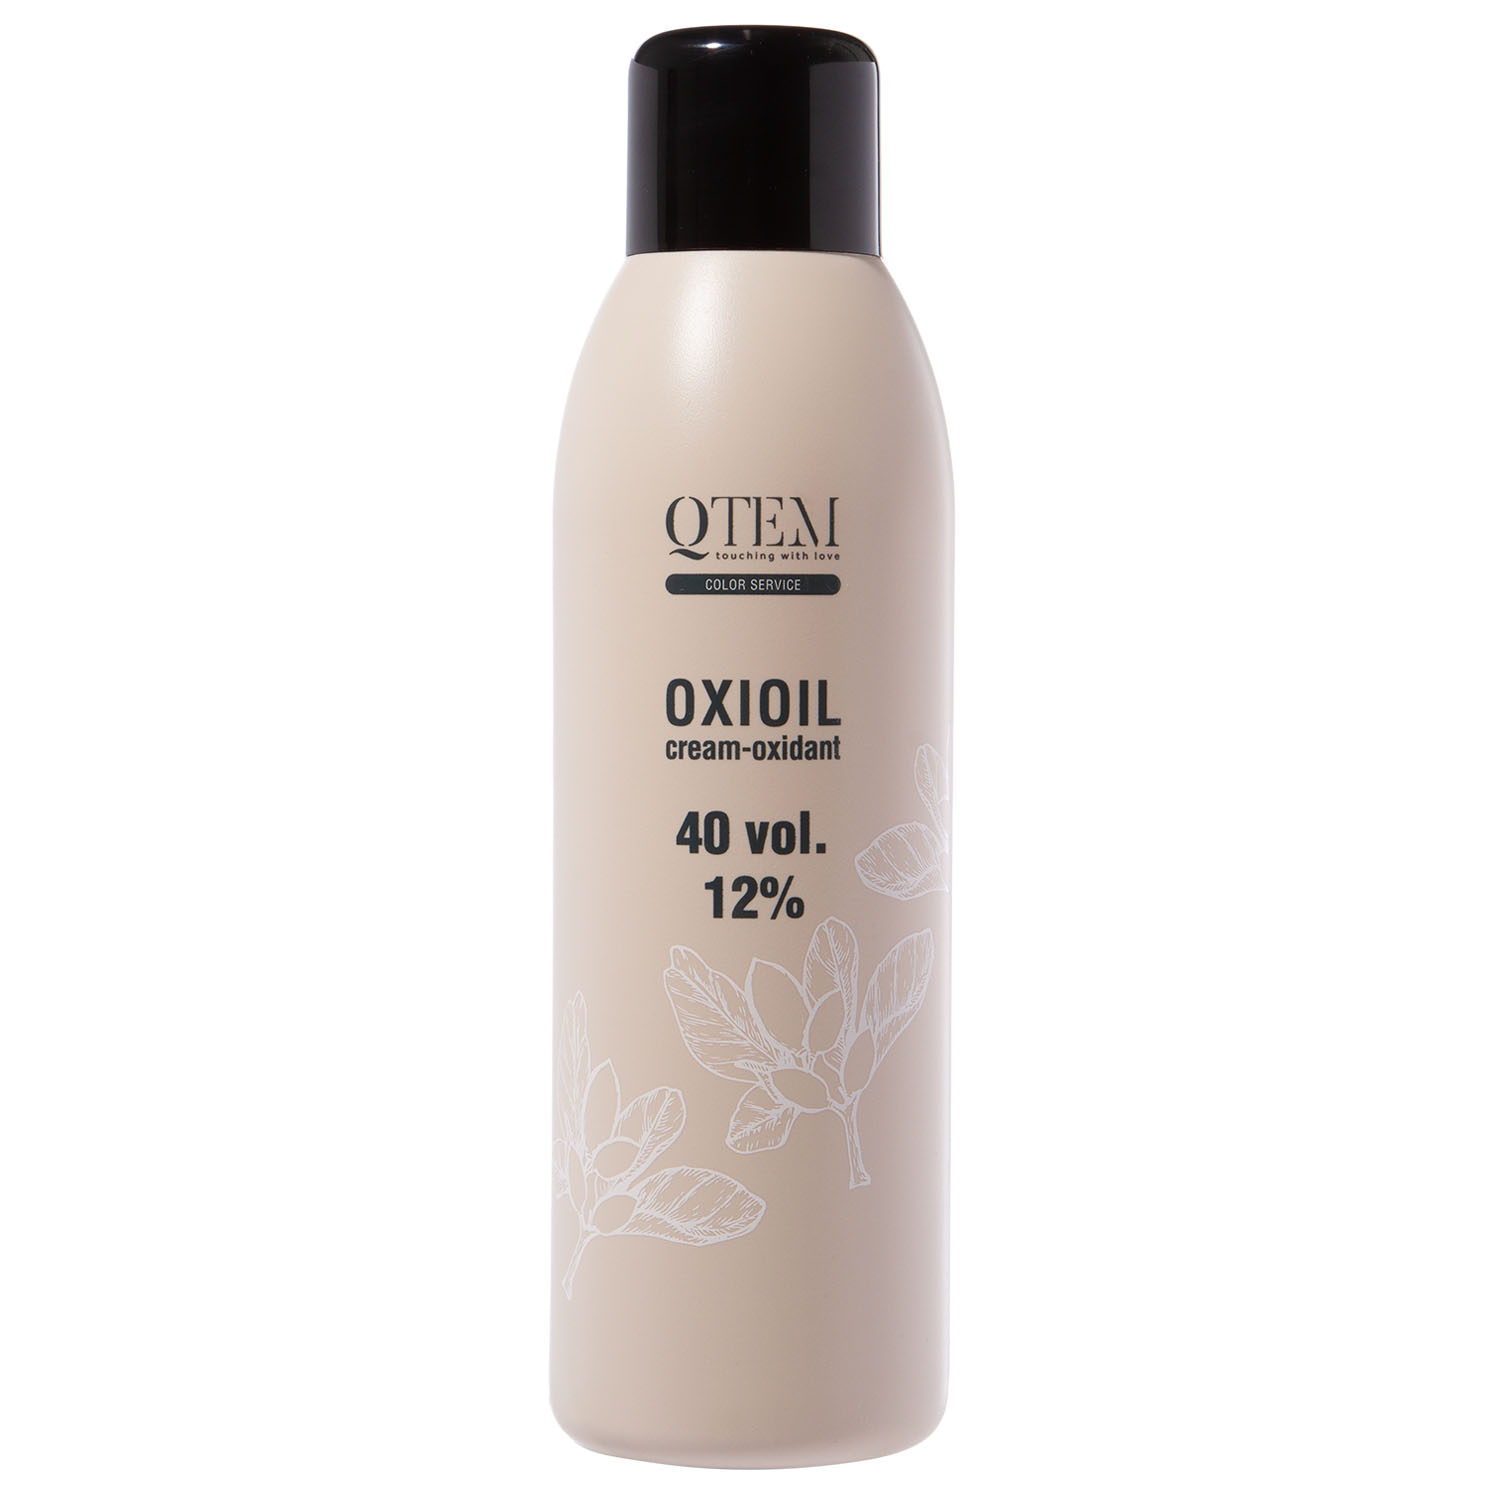 Qtem Универсальный крем-оксидант Oxioil 12% (40 Vol.), 1000 мл (Qtem, Color Service)